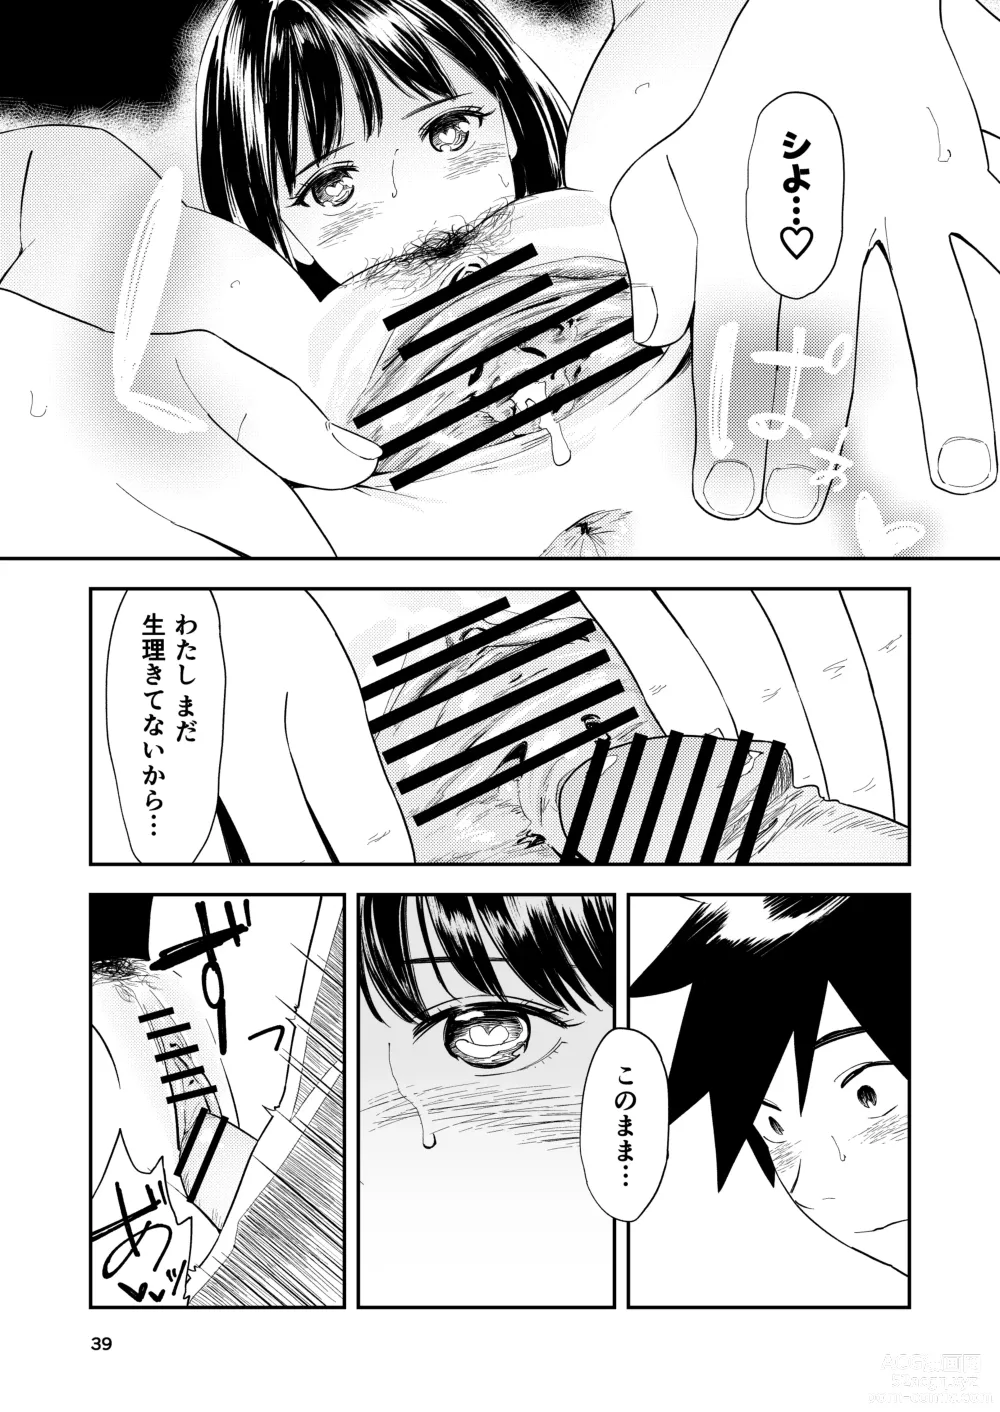 Page 40 of doujinshi Isshou Wasurerarenai Sex